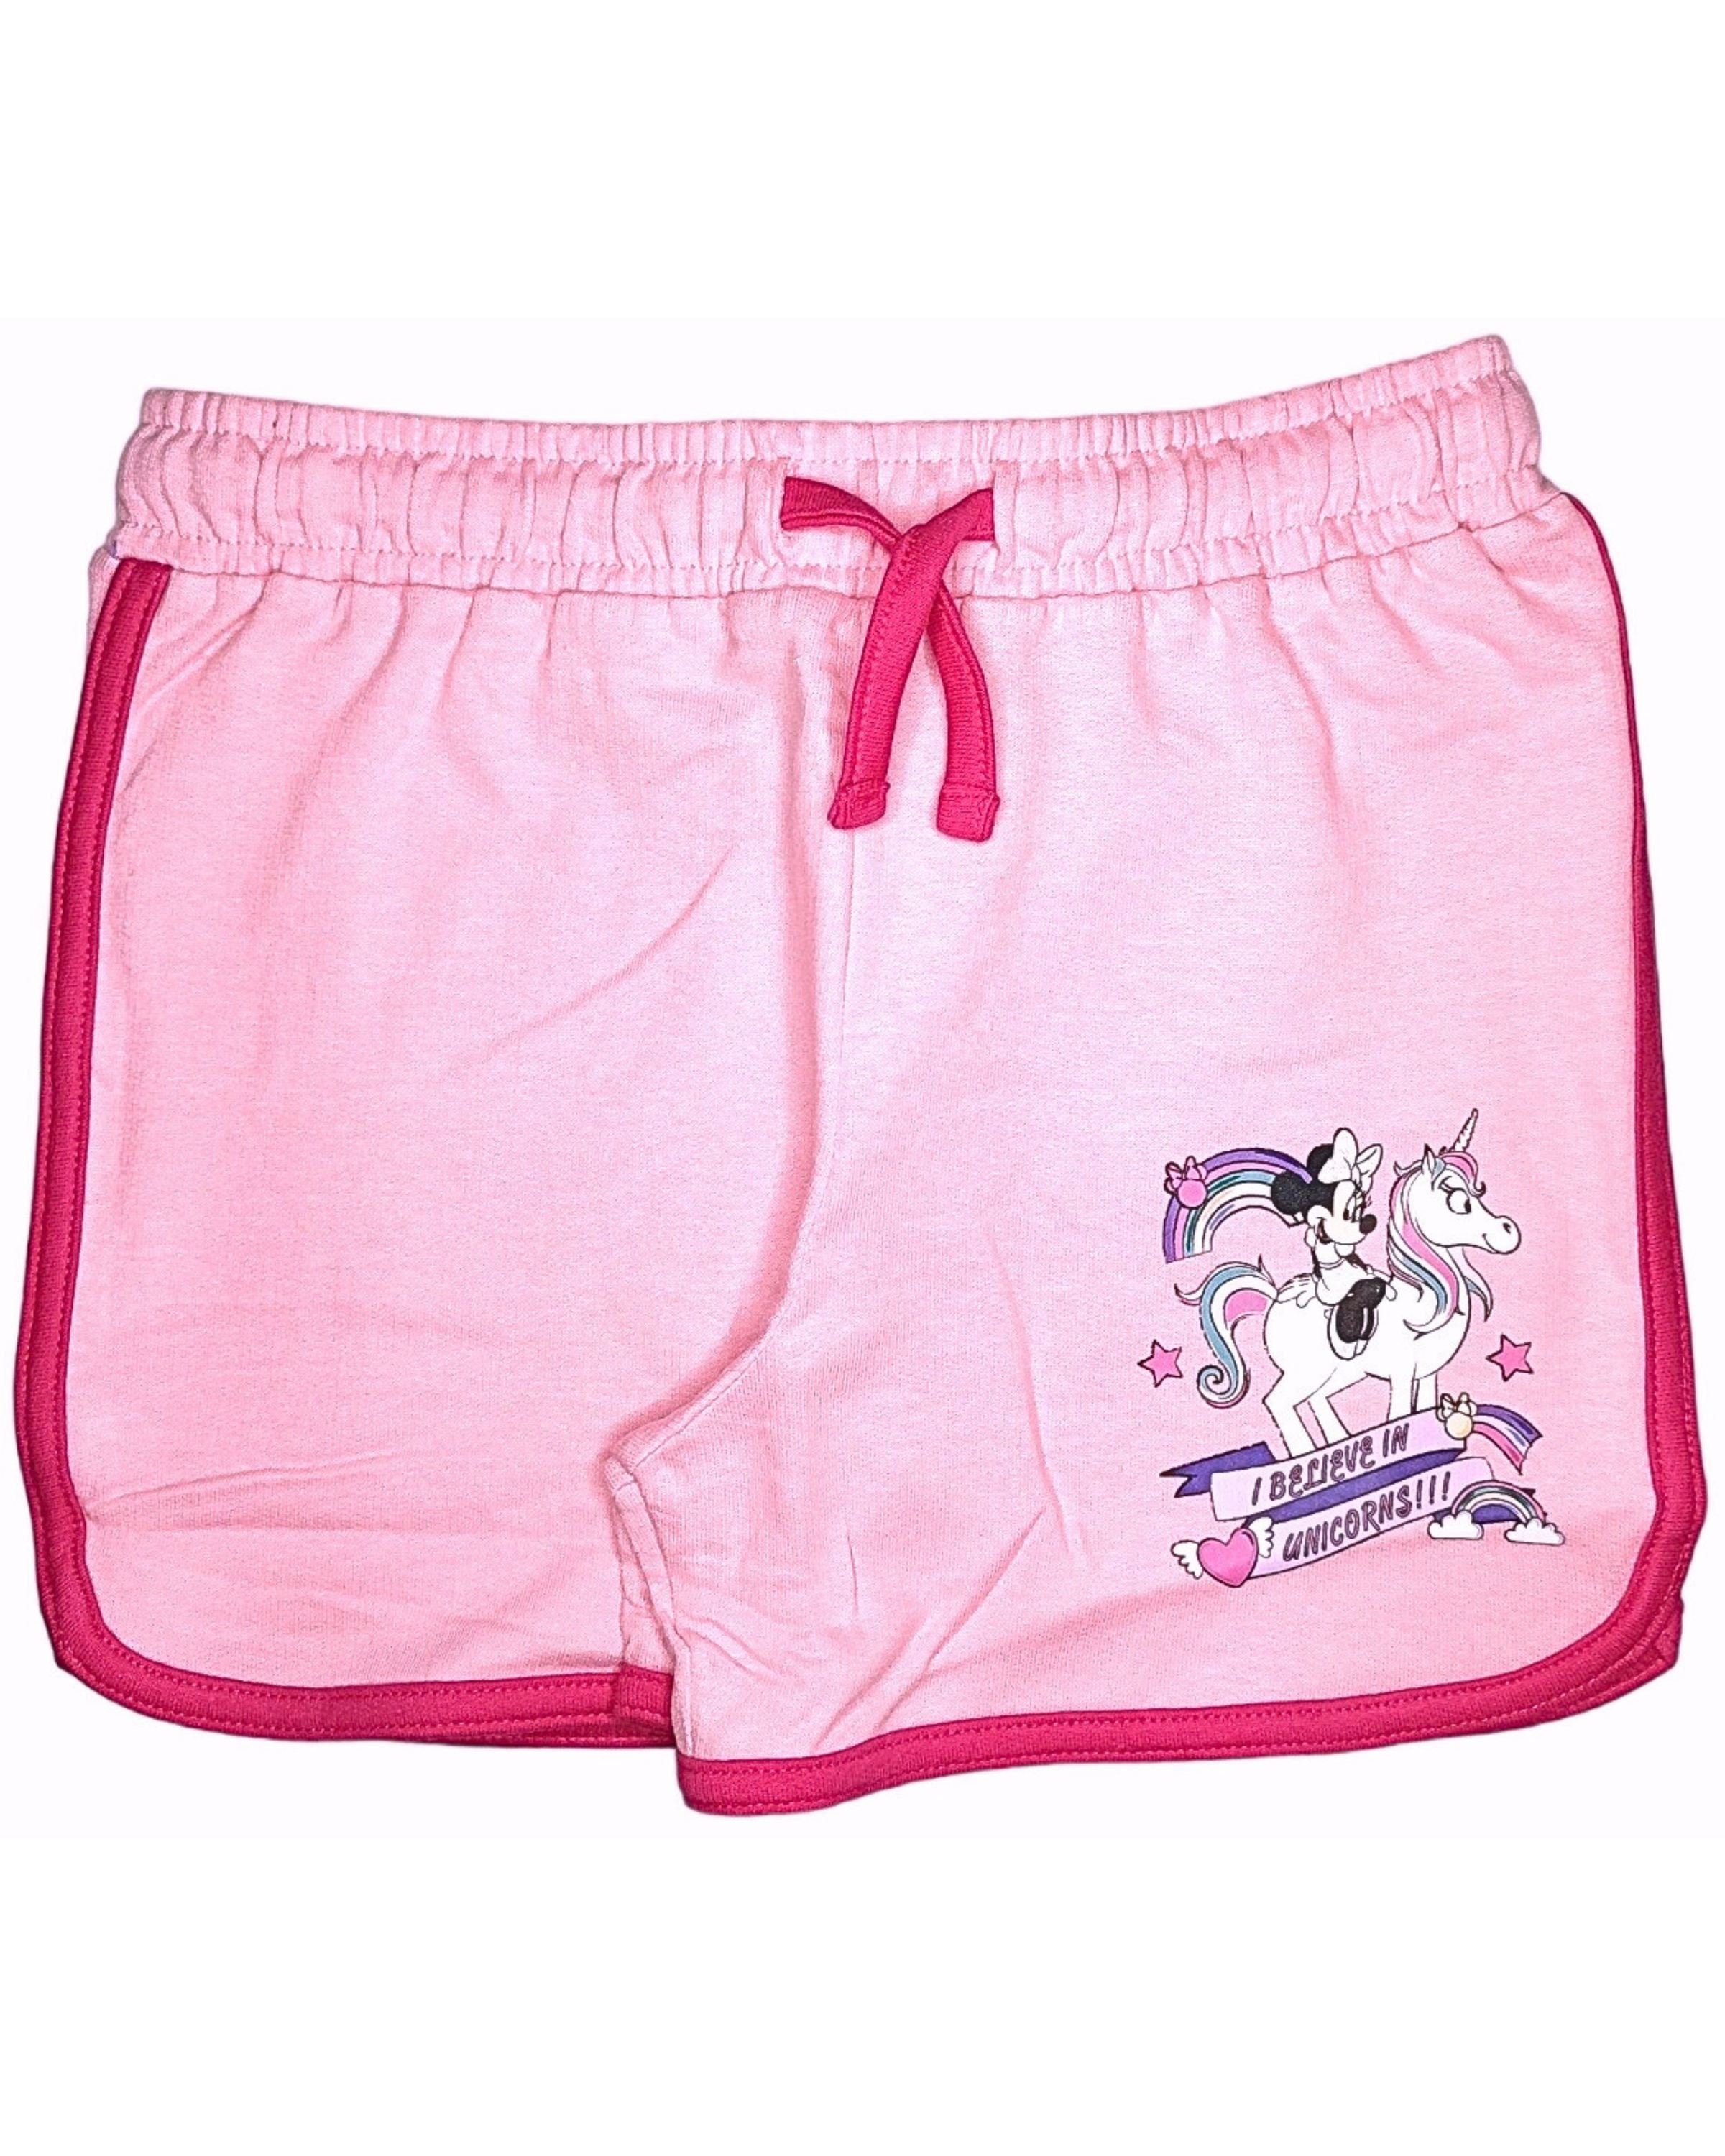 Disney Minnie Mouse Shorts Minnie Maus - I believe in Unicorns Mädchen kurze Hose aus Baumwolle Gr. 98 - 128 cm Rosa